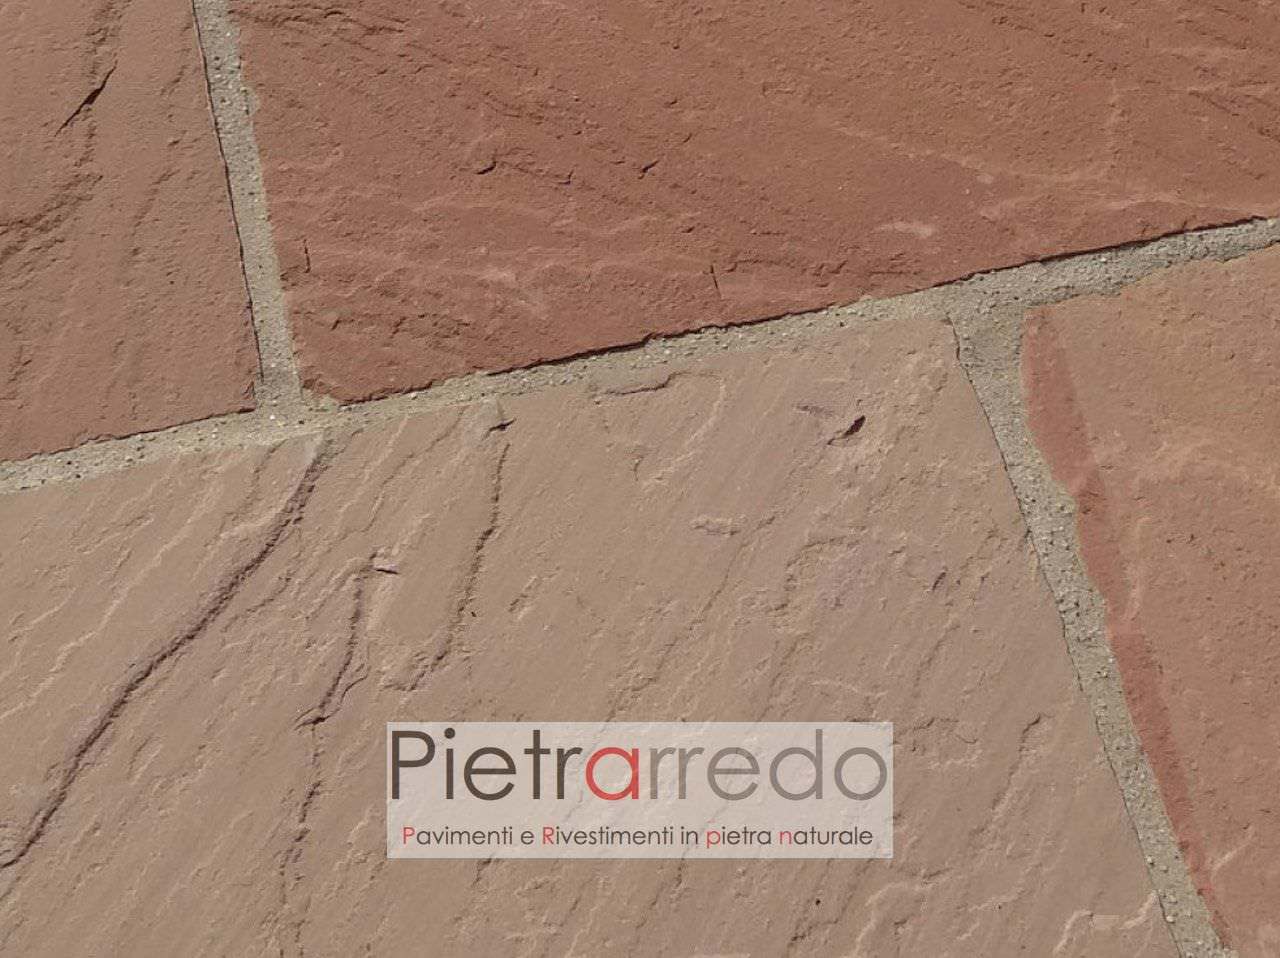 prezzo stock per pavimento in sasso pietra da esterno formati giganti grandi prezzo costi modak arenaria pietrarredo milano